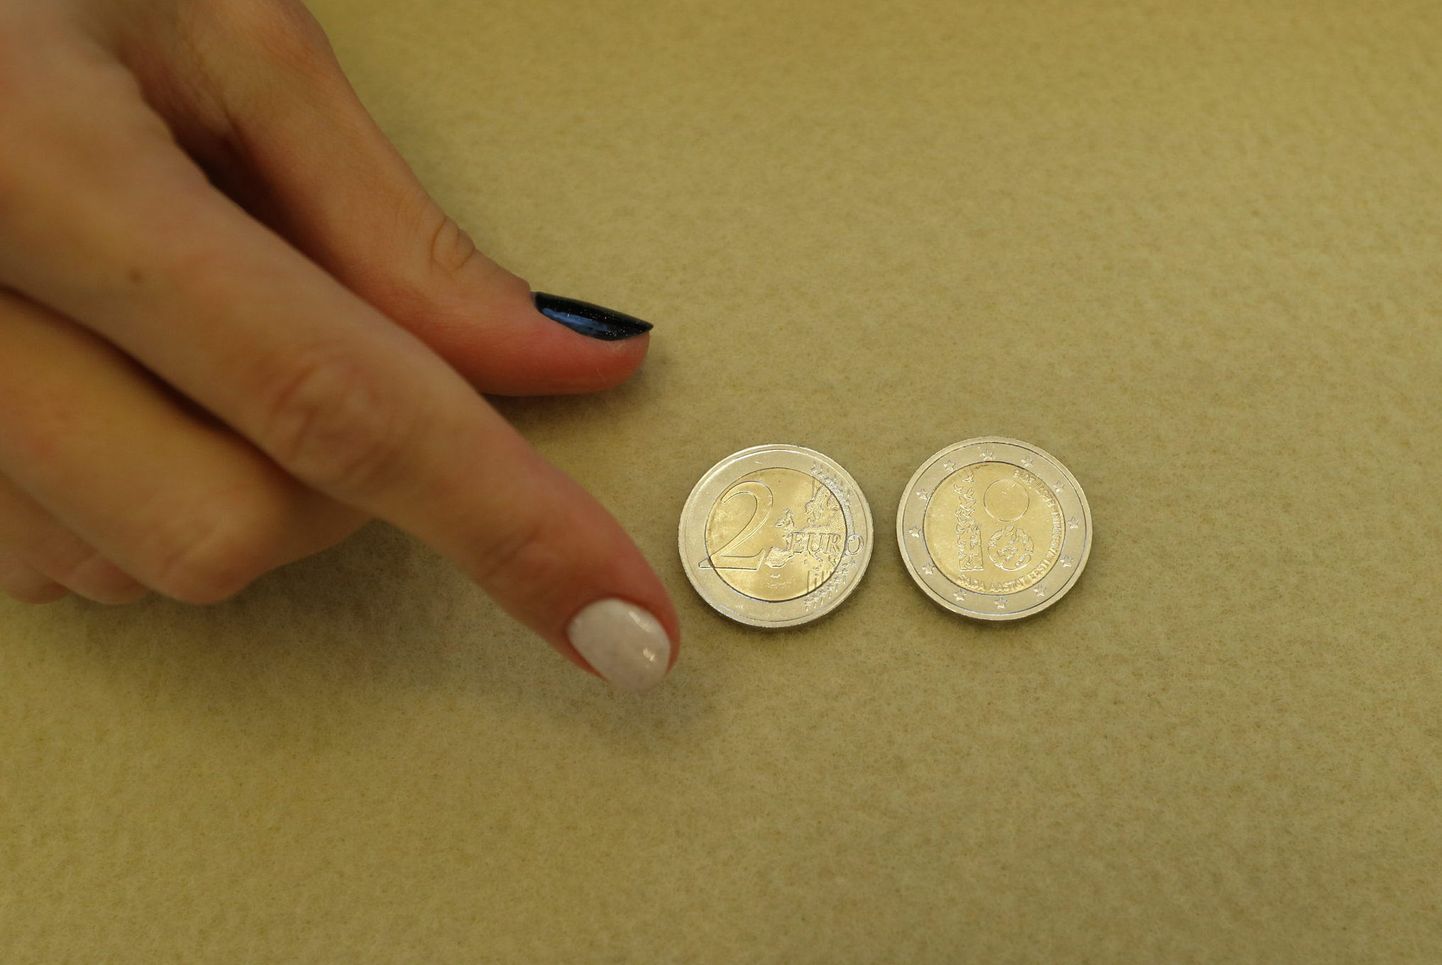 Монета достоинством в два евро. Иллюстративное фото.